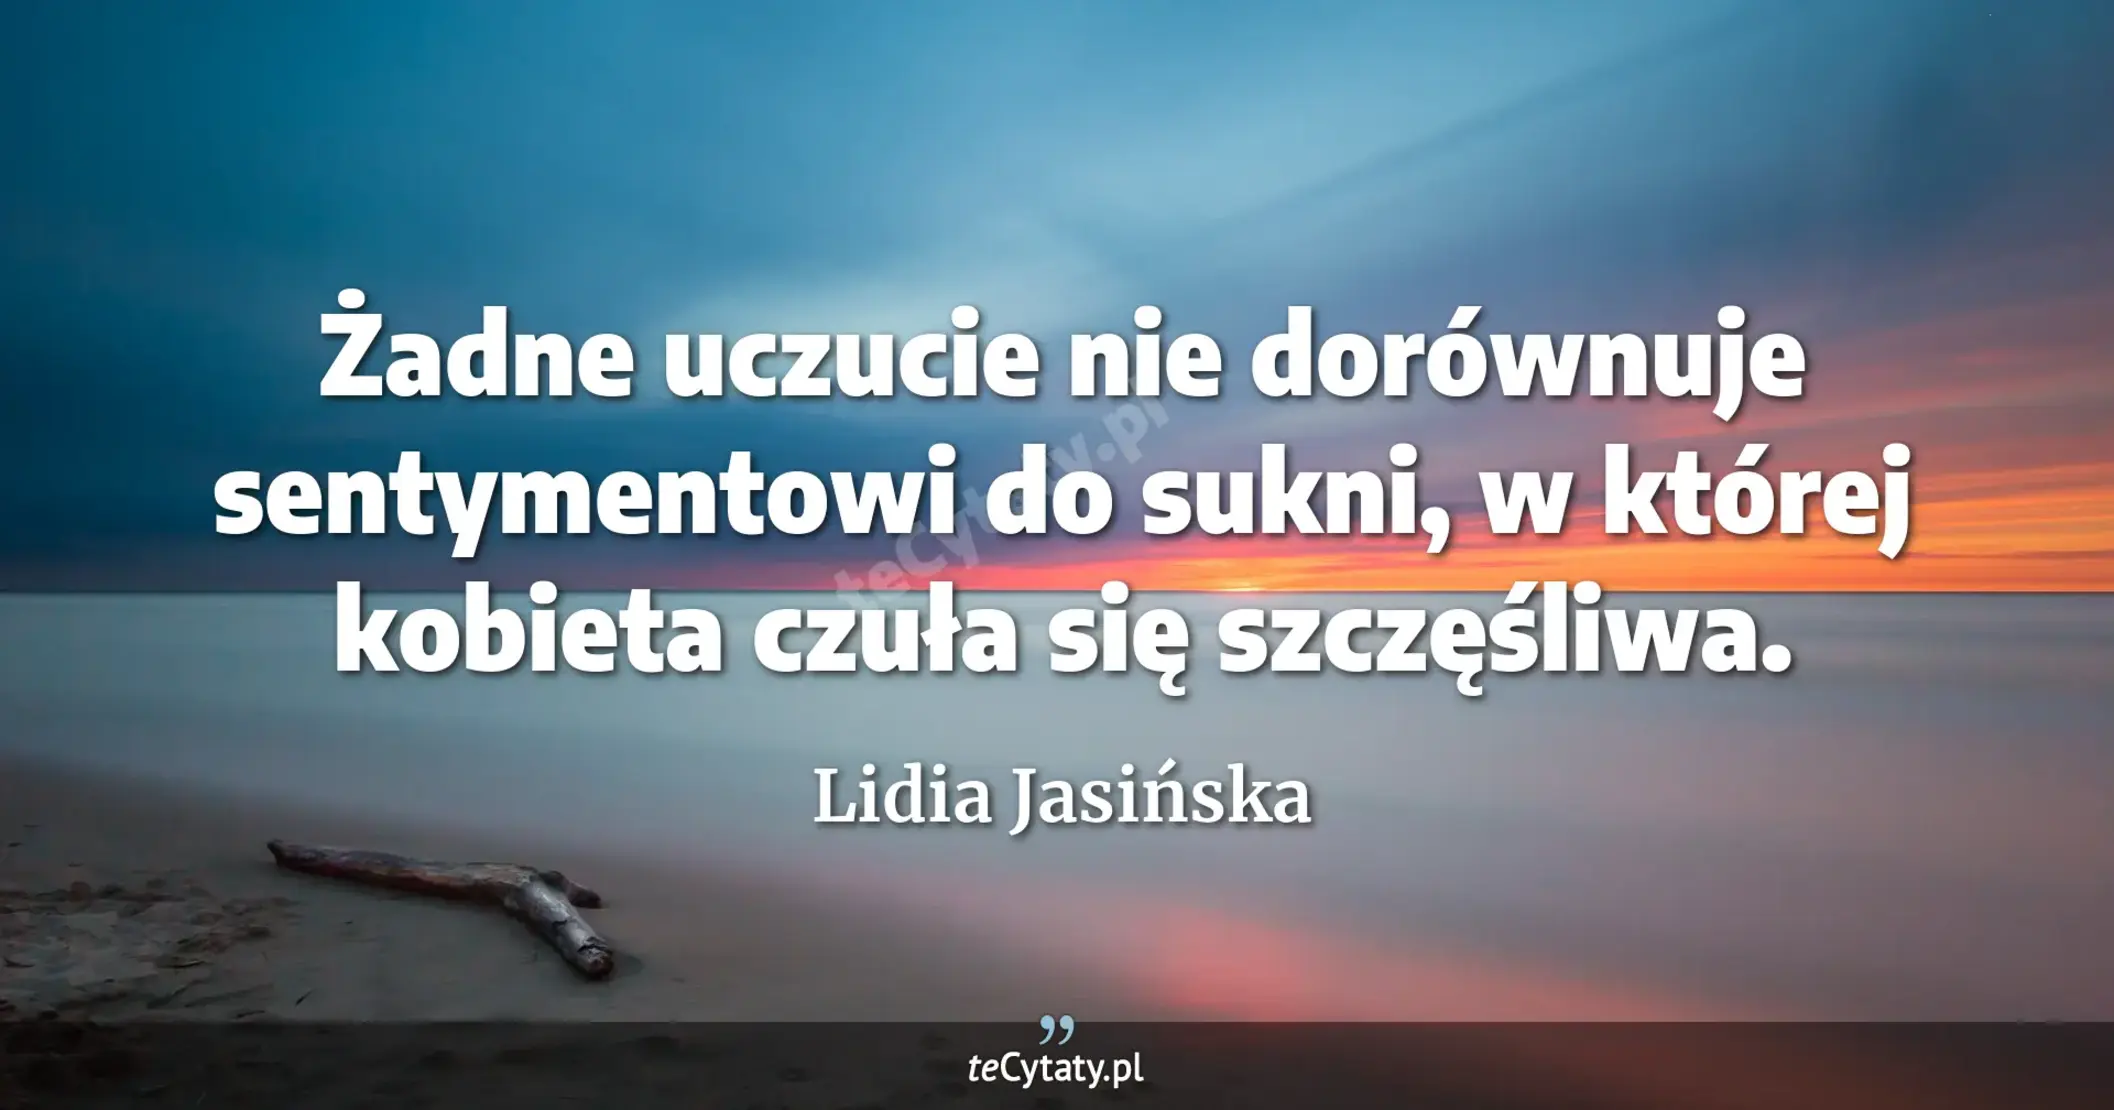 Żadne uczucie nie dorównuje sentymentowi do sukni, w której kobieta czuła się szczęśliwa. - Lidia Jasińska